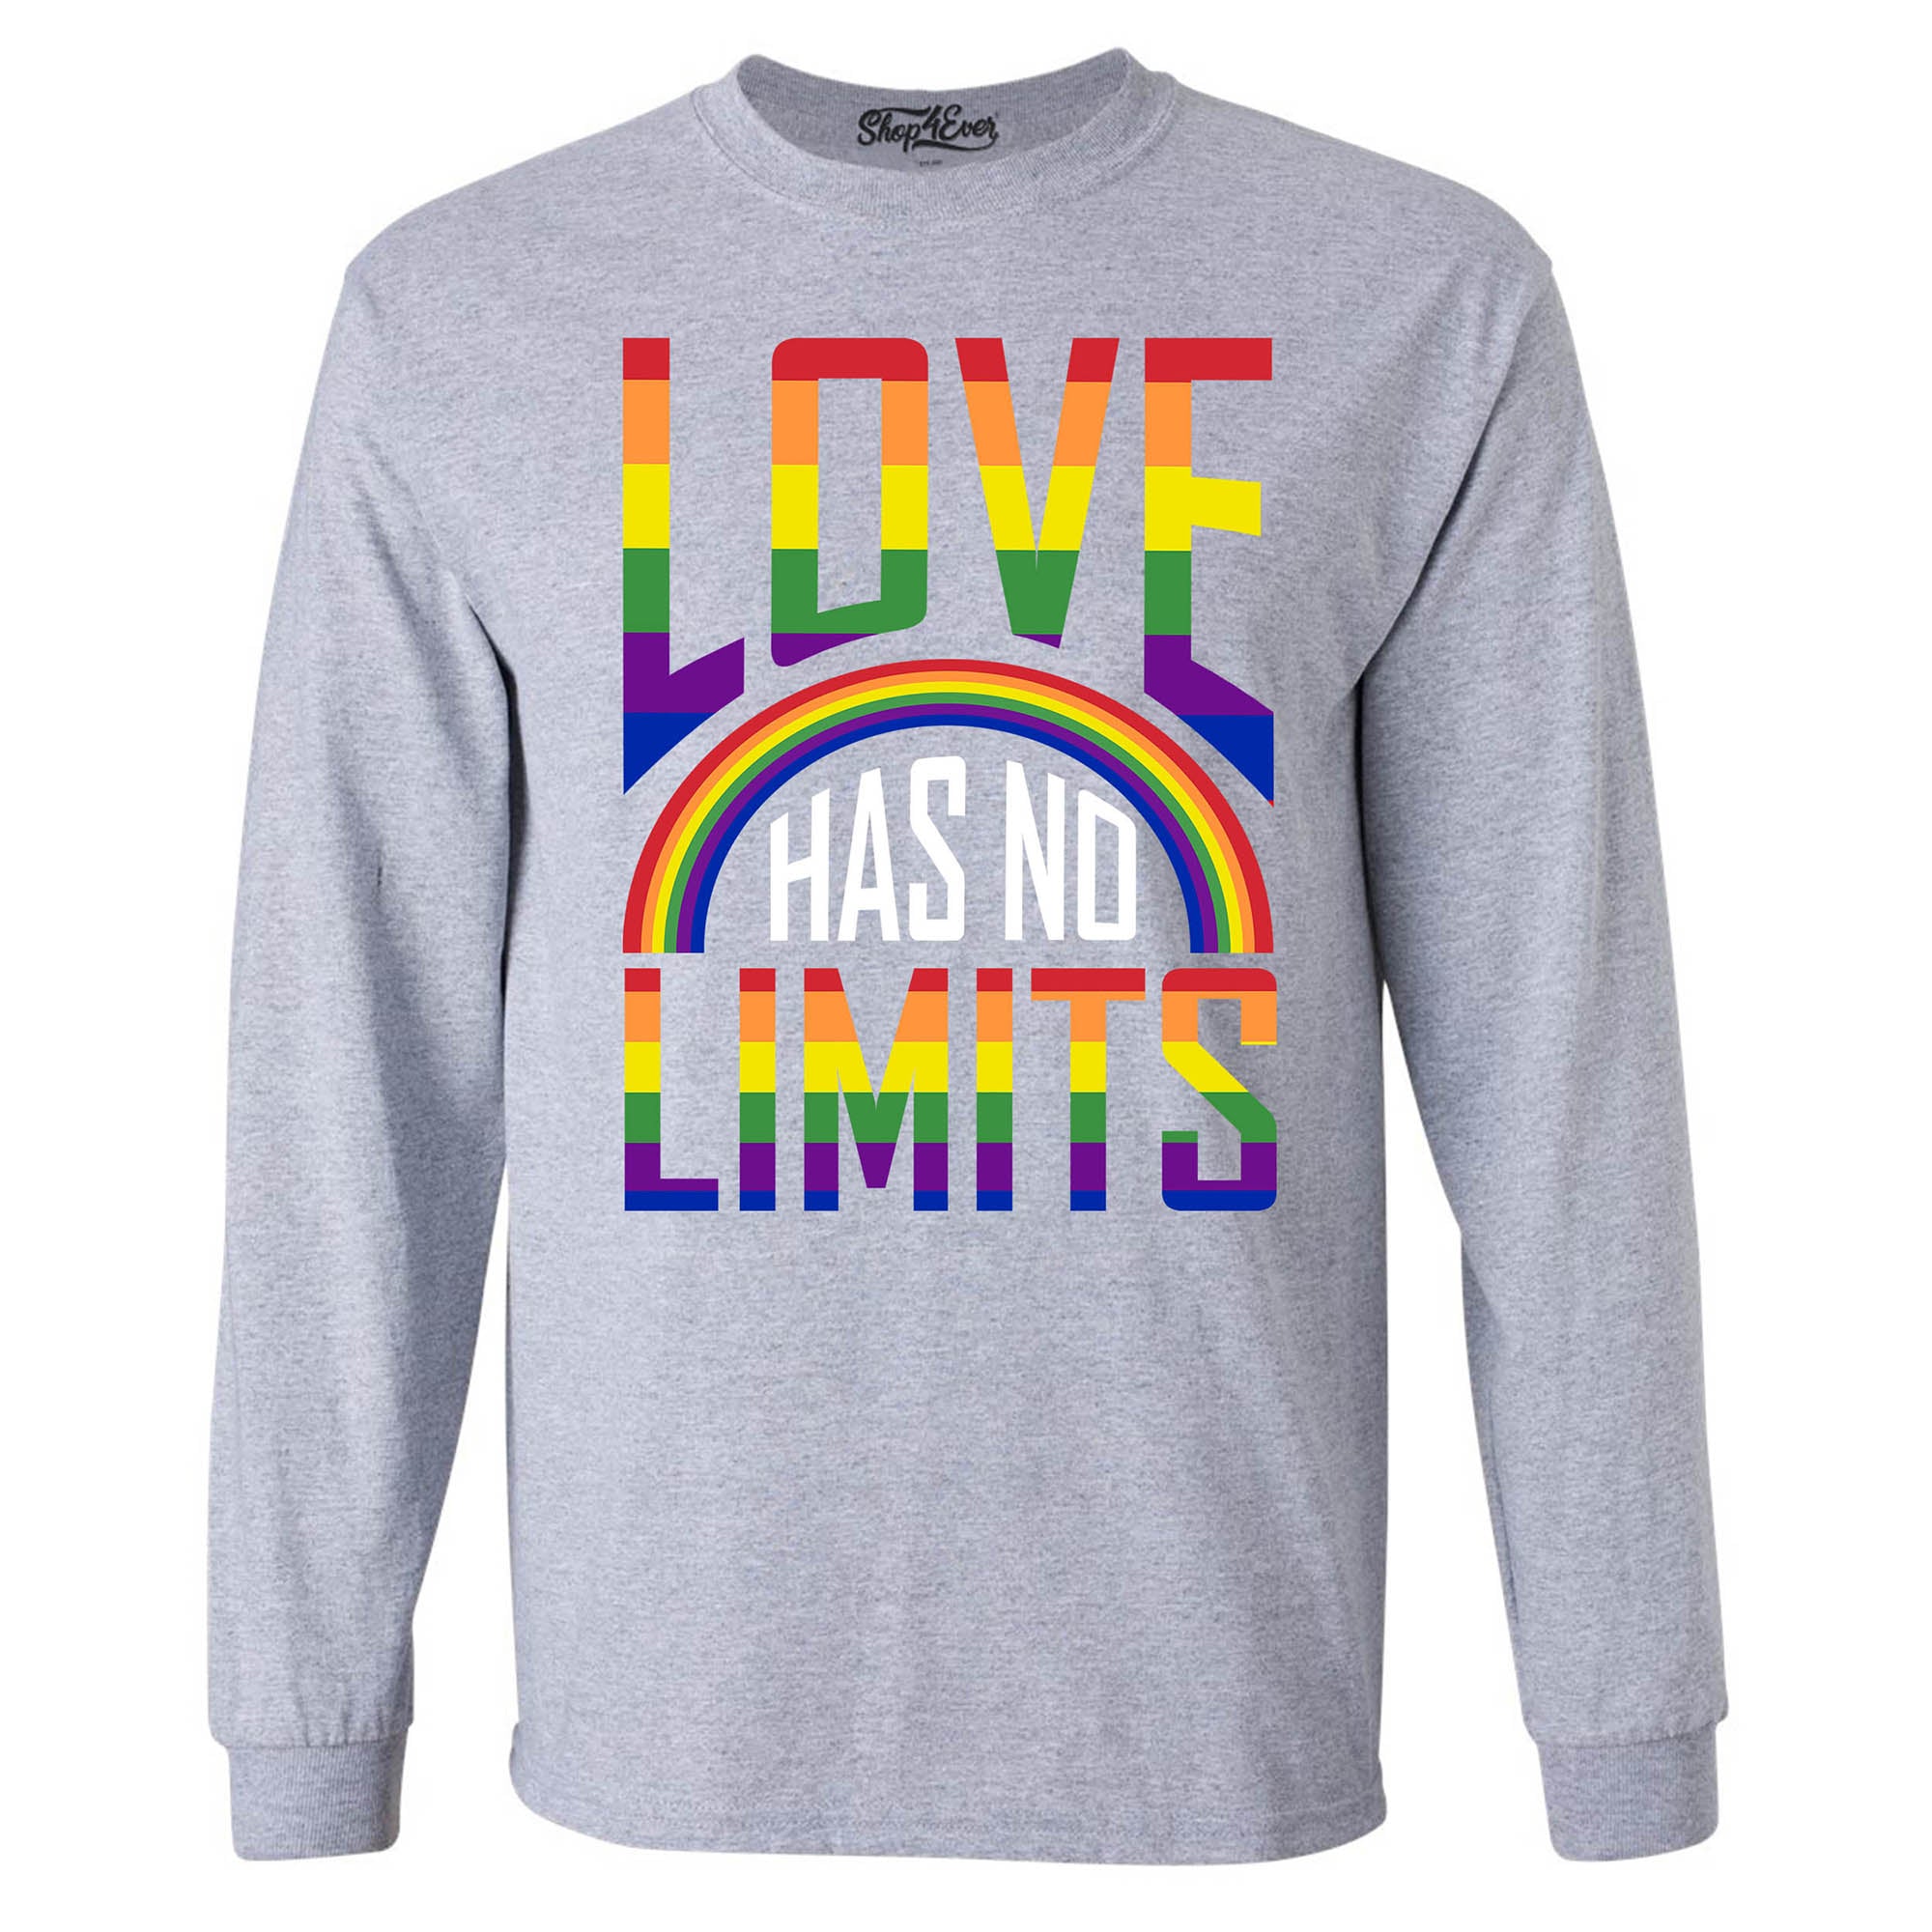 Love Has No Limits ~ Gay Pride Long Sleeve Shirt